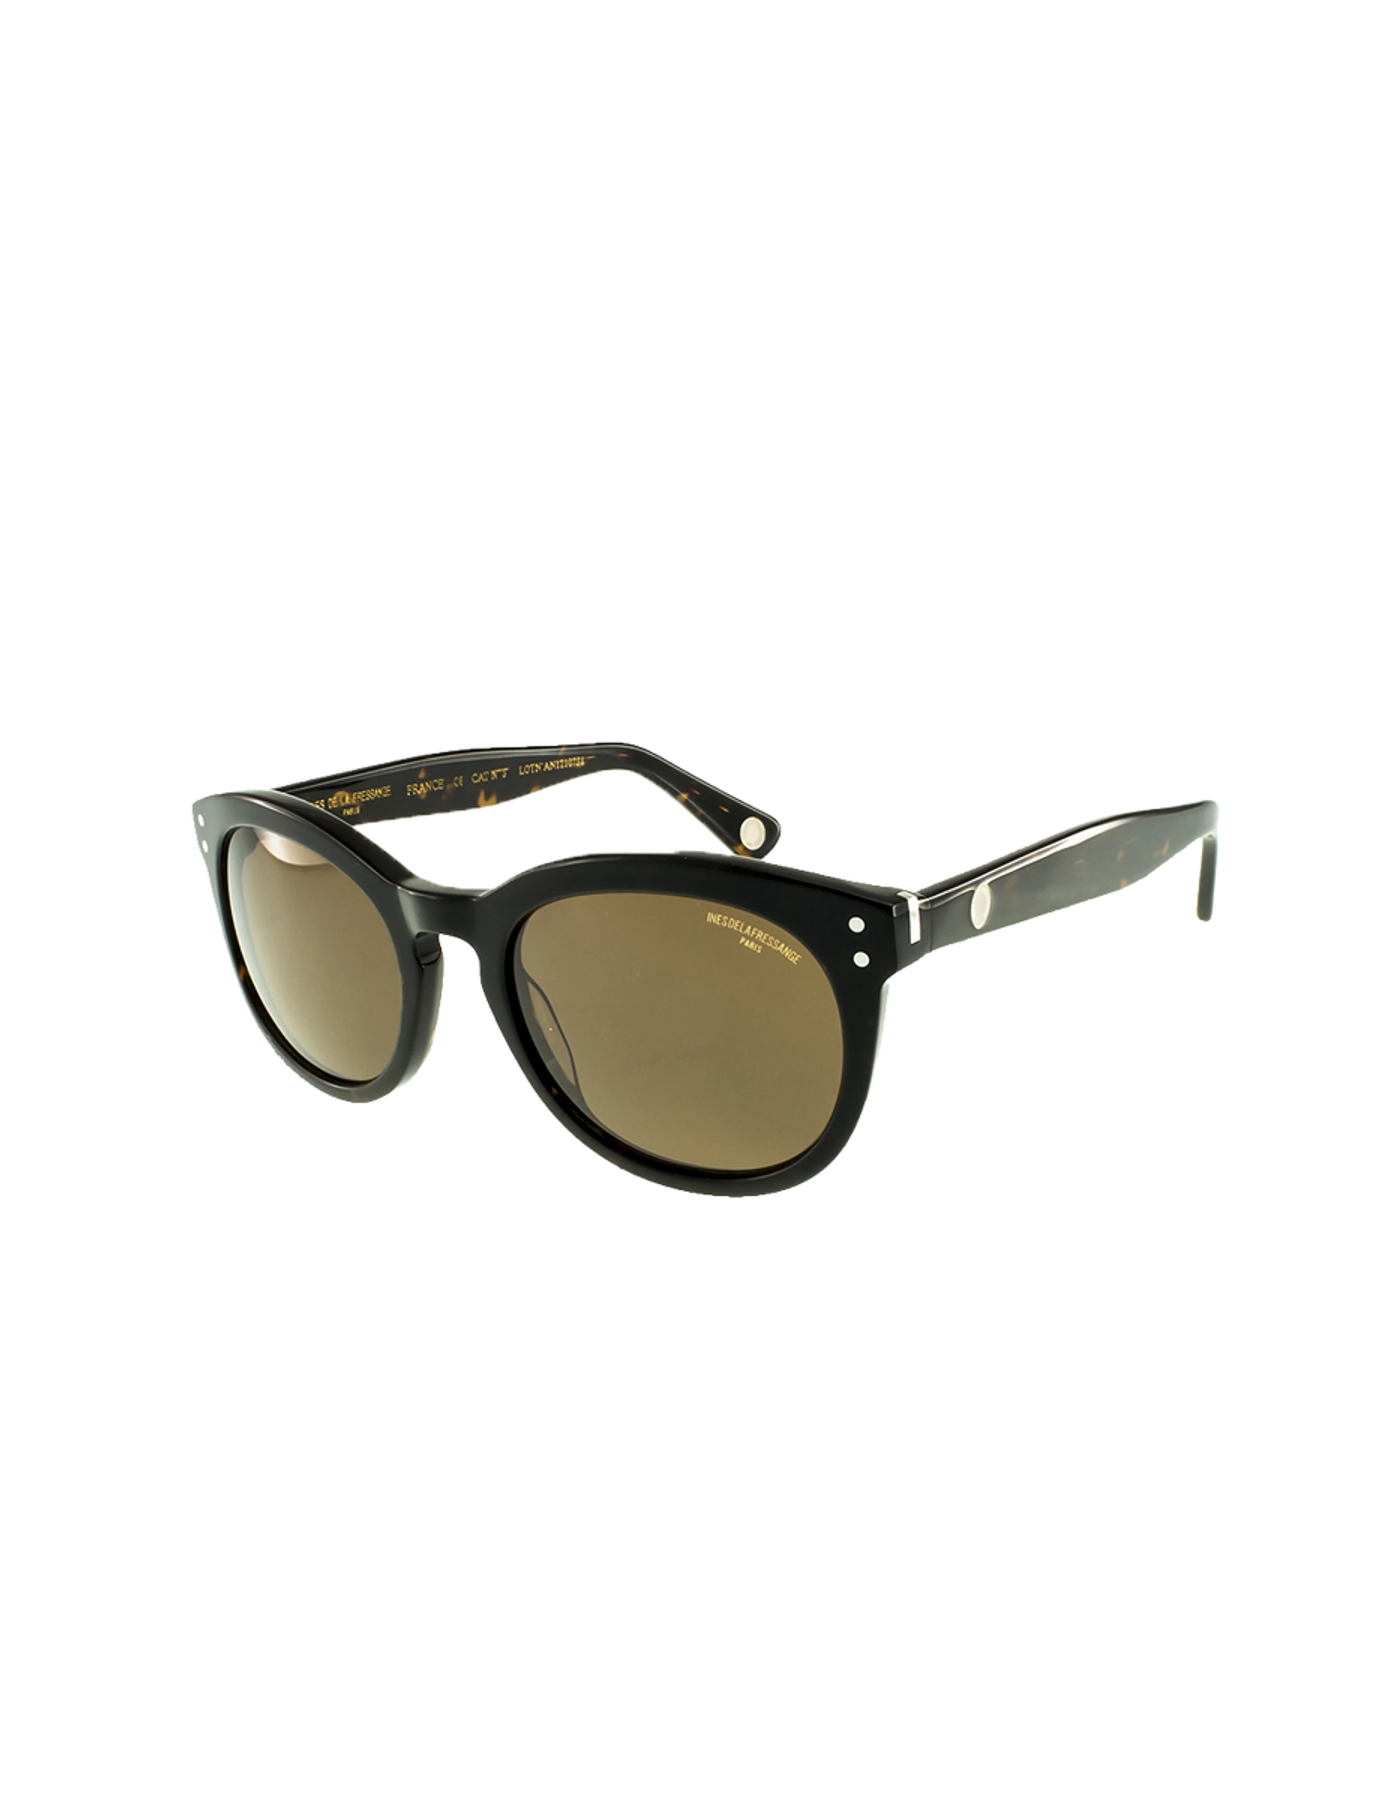 sunglasses-lola-black-squares